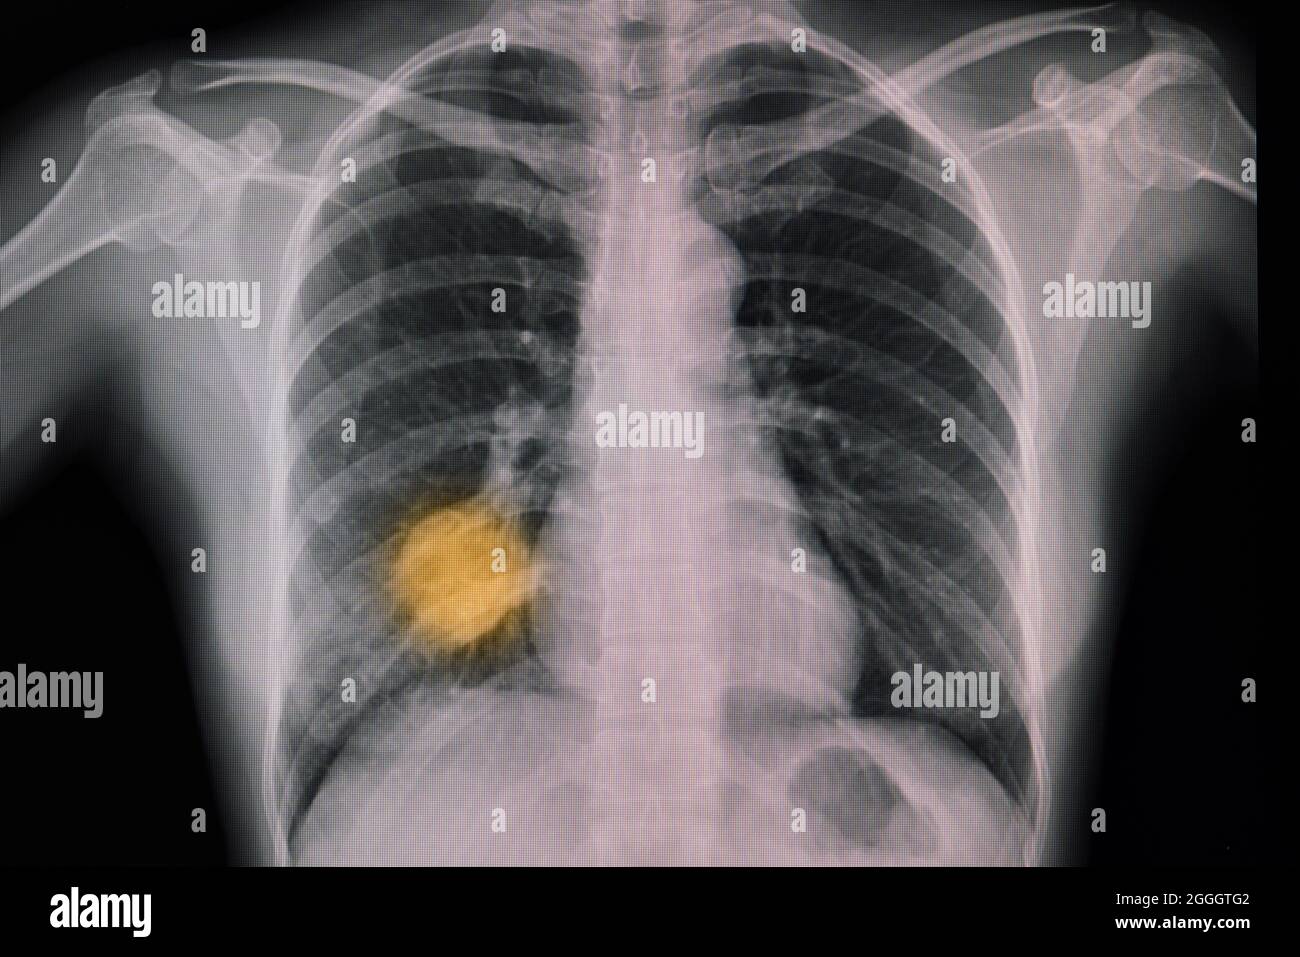 Radiographie thoracique d'un patient présentant une tumeur pulmonaire primaire et une pneumonie montrant une zone d'opacité dans le lobe inférieur droit et une lésion de masse dans le lob central droit Banque D'Images